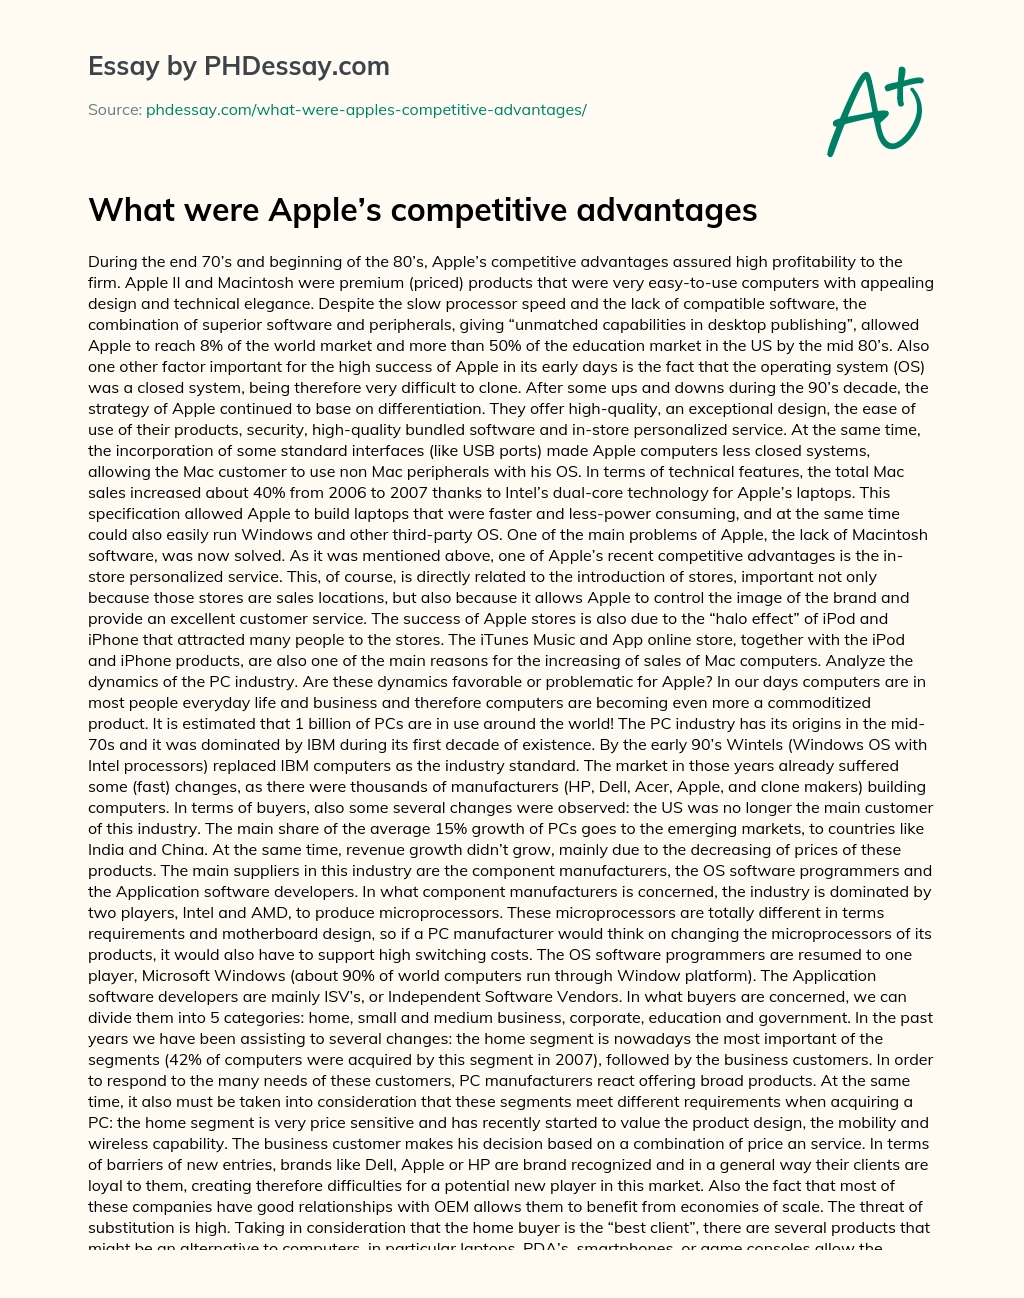 What were Apple’s competitive advantages essay